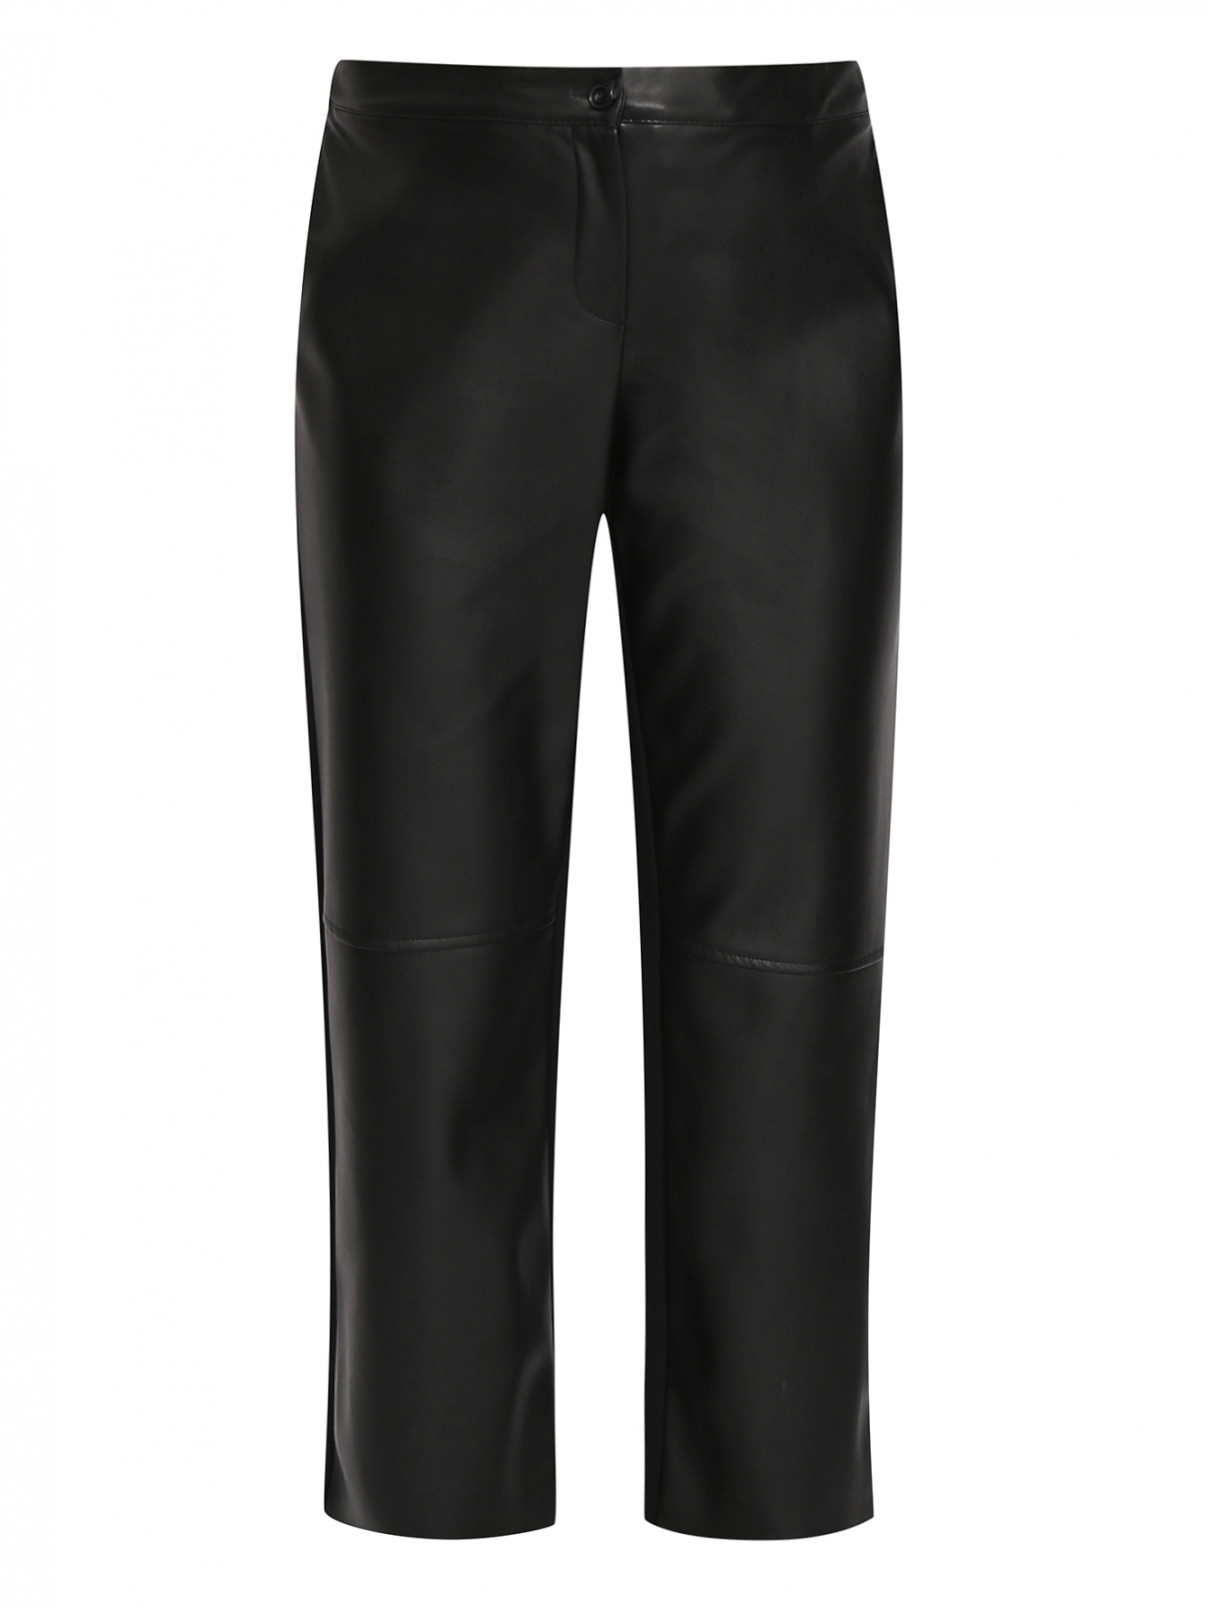 Комбинированные брюки из эко-кожи Persona by Marina Rinaldi  –  Общий вид  – Цвет:  Черный